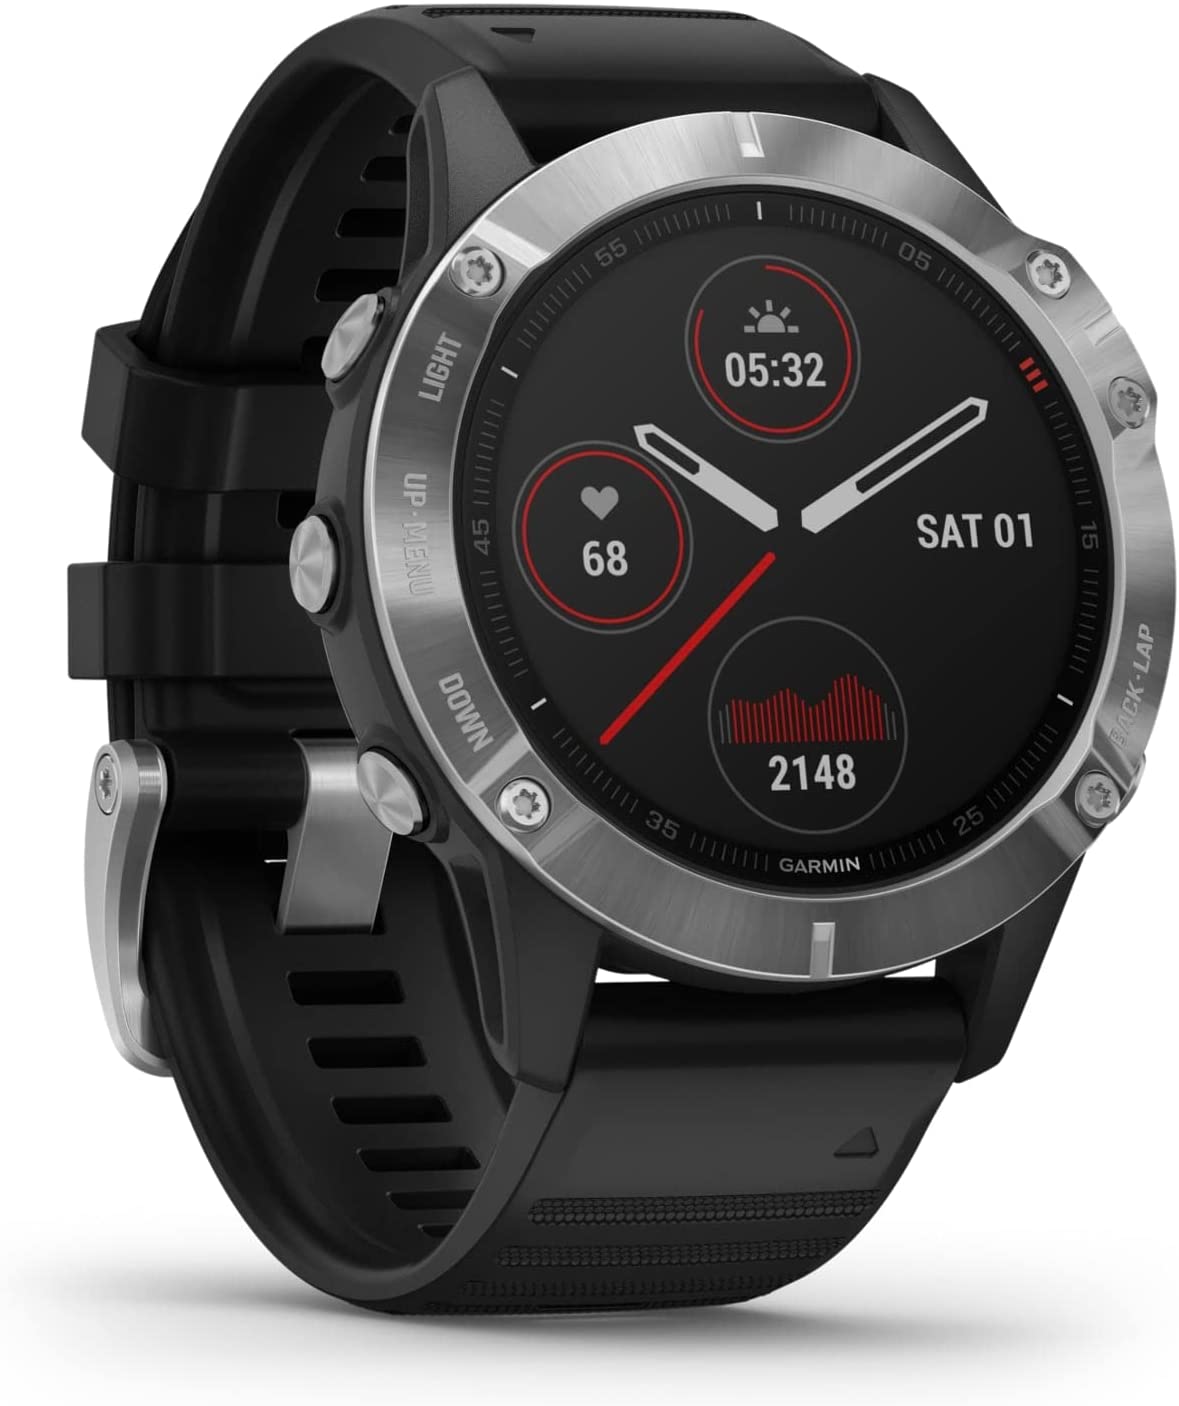 Bild zu GPS Multisport Smartwatch Garmin Fenix 6 für 295,45€ (Vergleich: 345,23€)